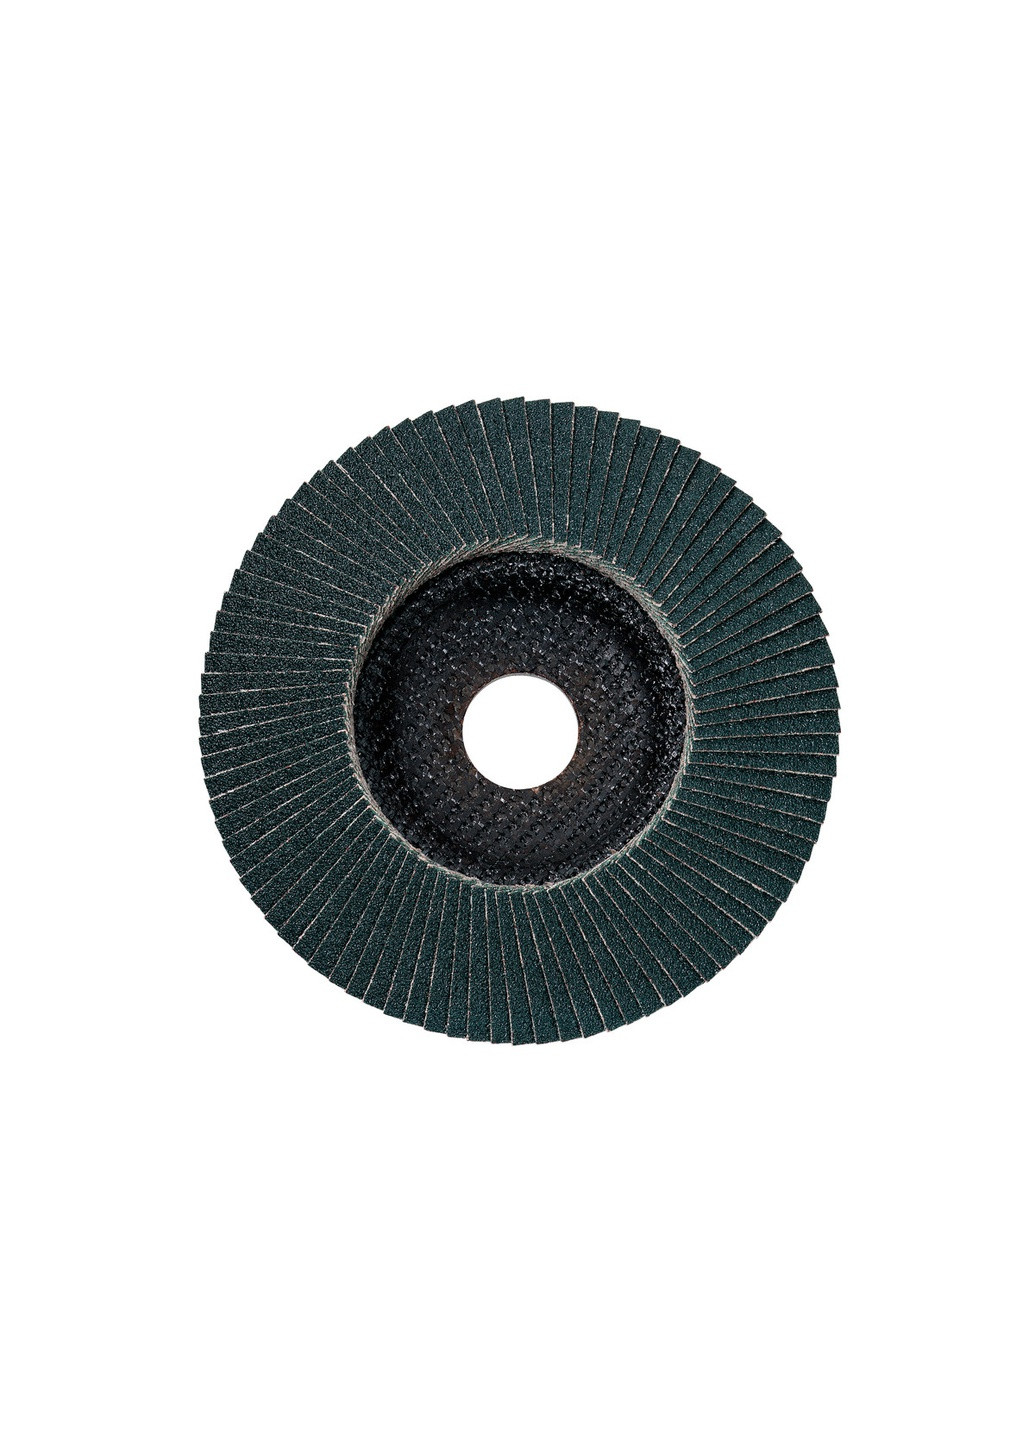 Ламельний шліфувальний круг Flexiamant 115 мм, P 60, FZK 624247000 (8695) Metabo (266817465)